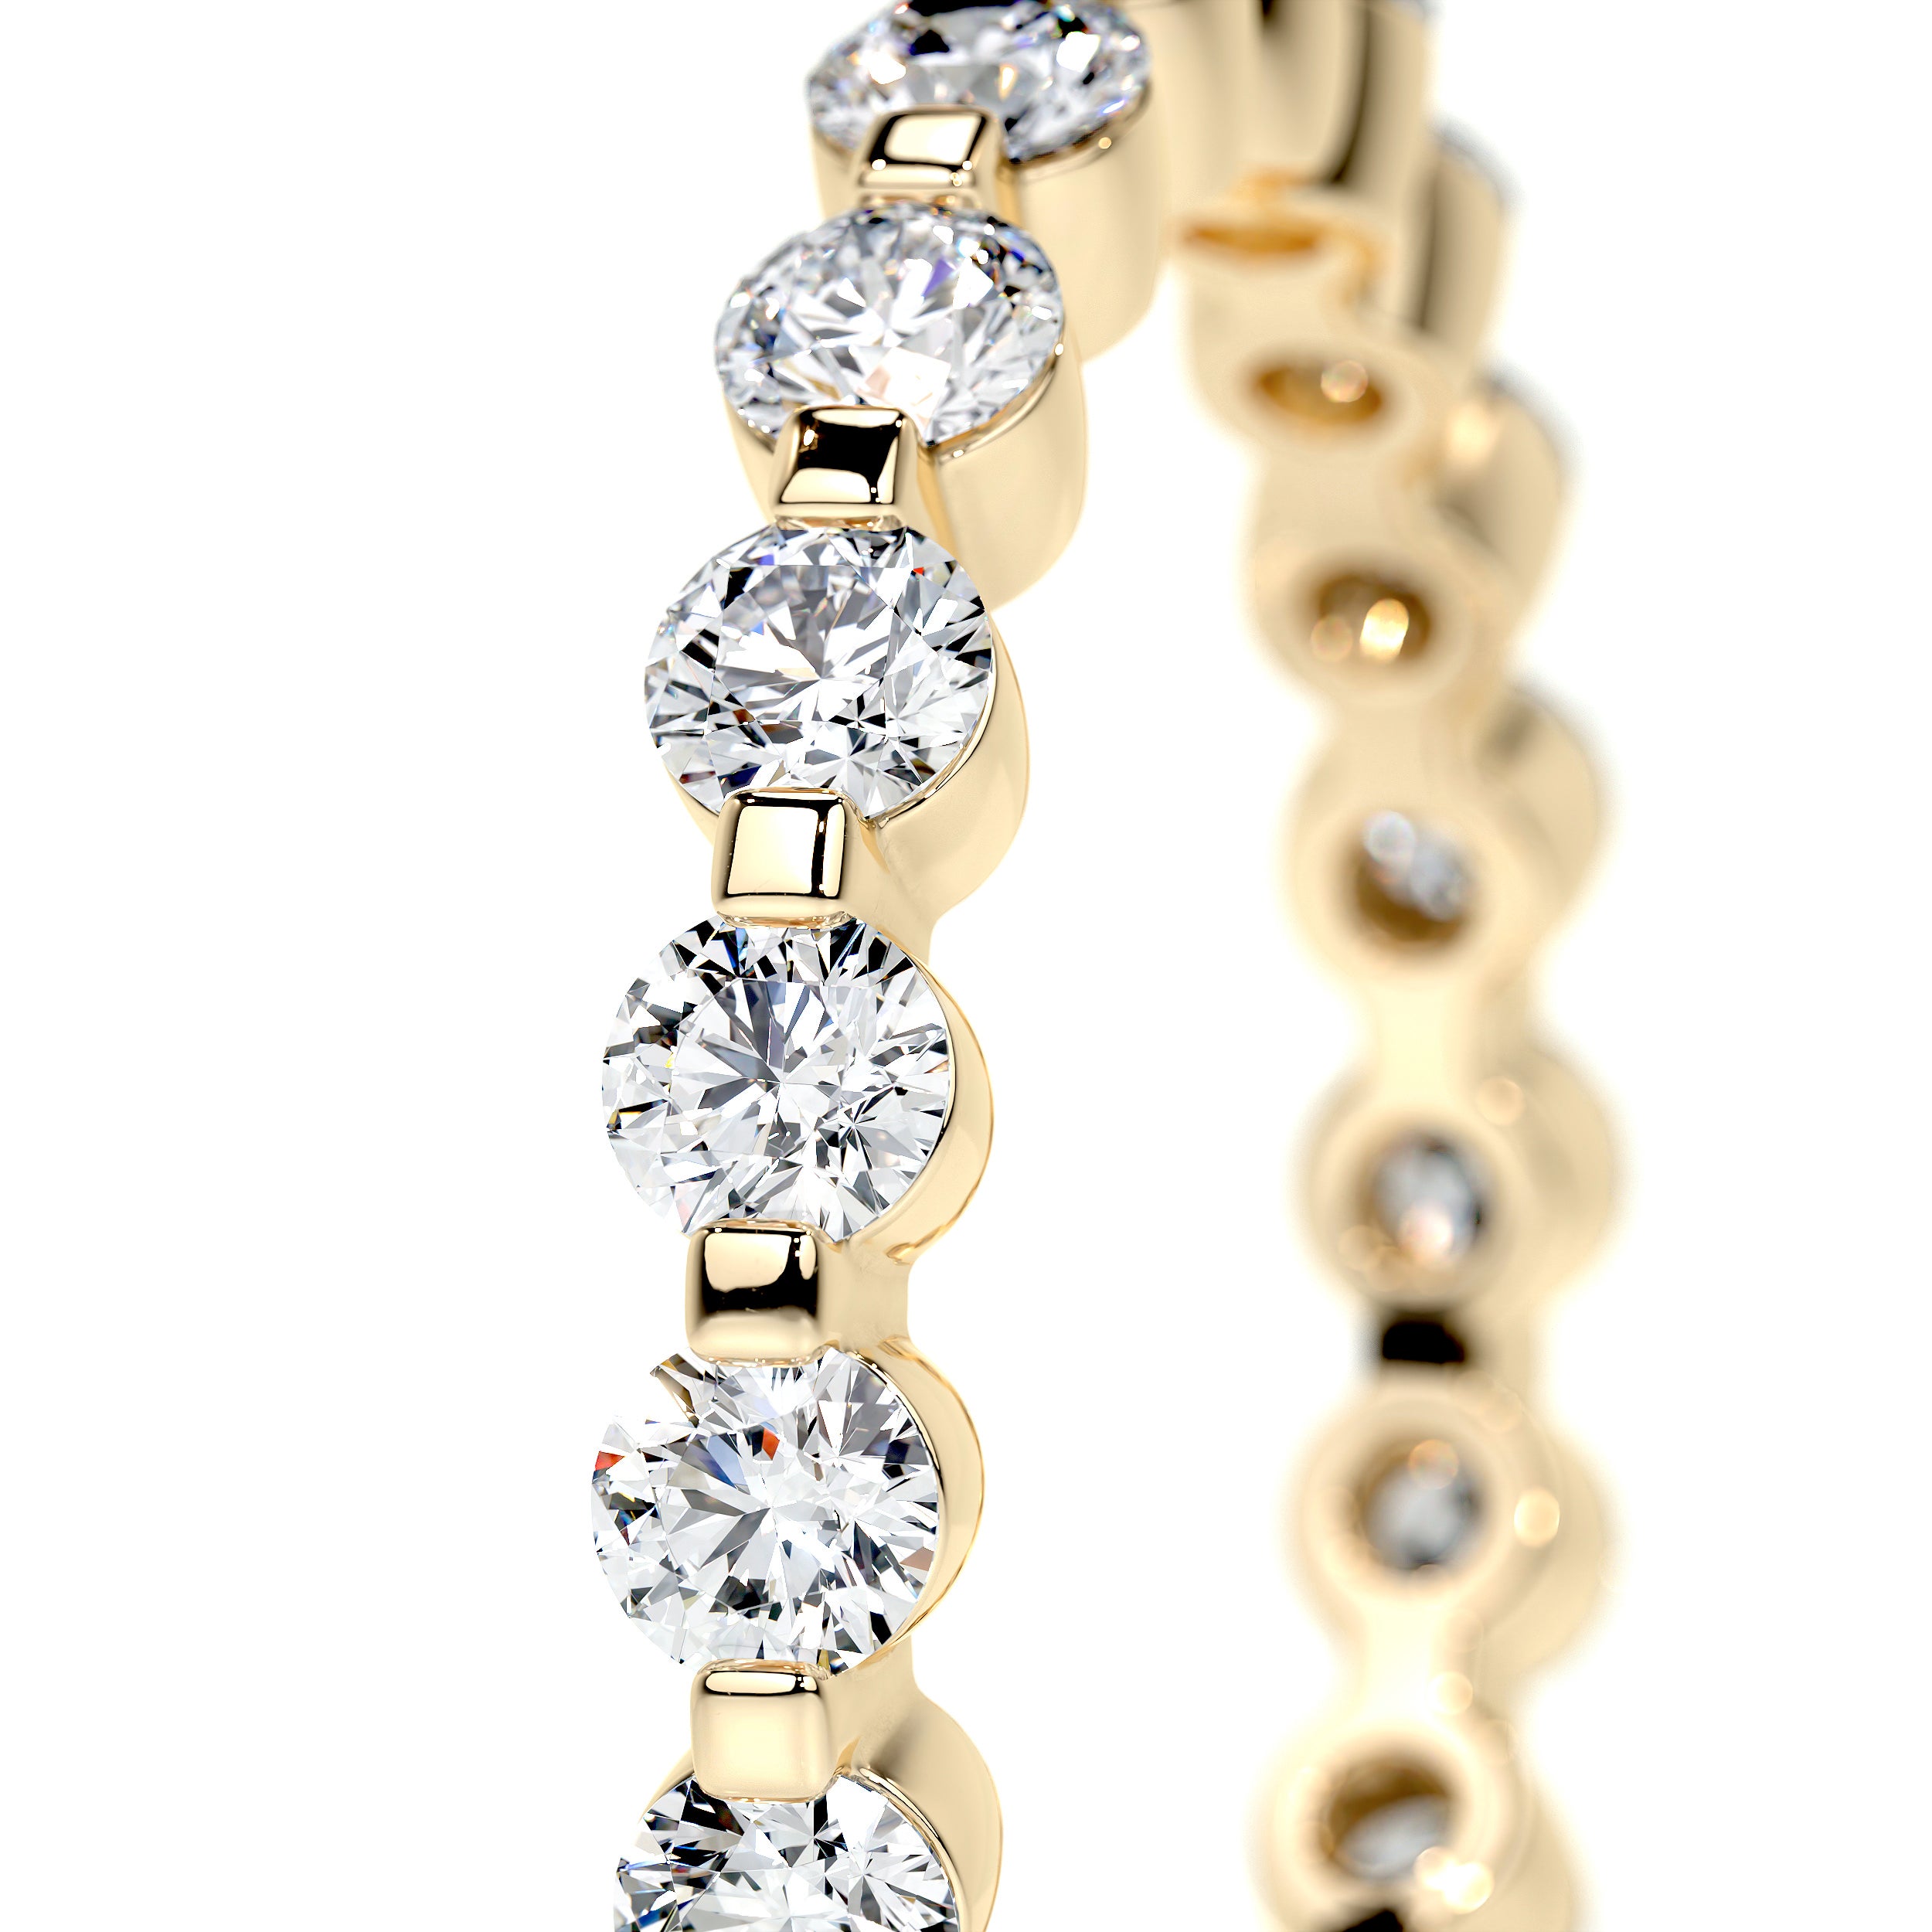 Josie Lab Grown Eternity Wedding Ring   (1 Carat) -18K Yellow Gold